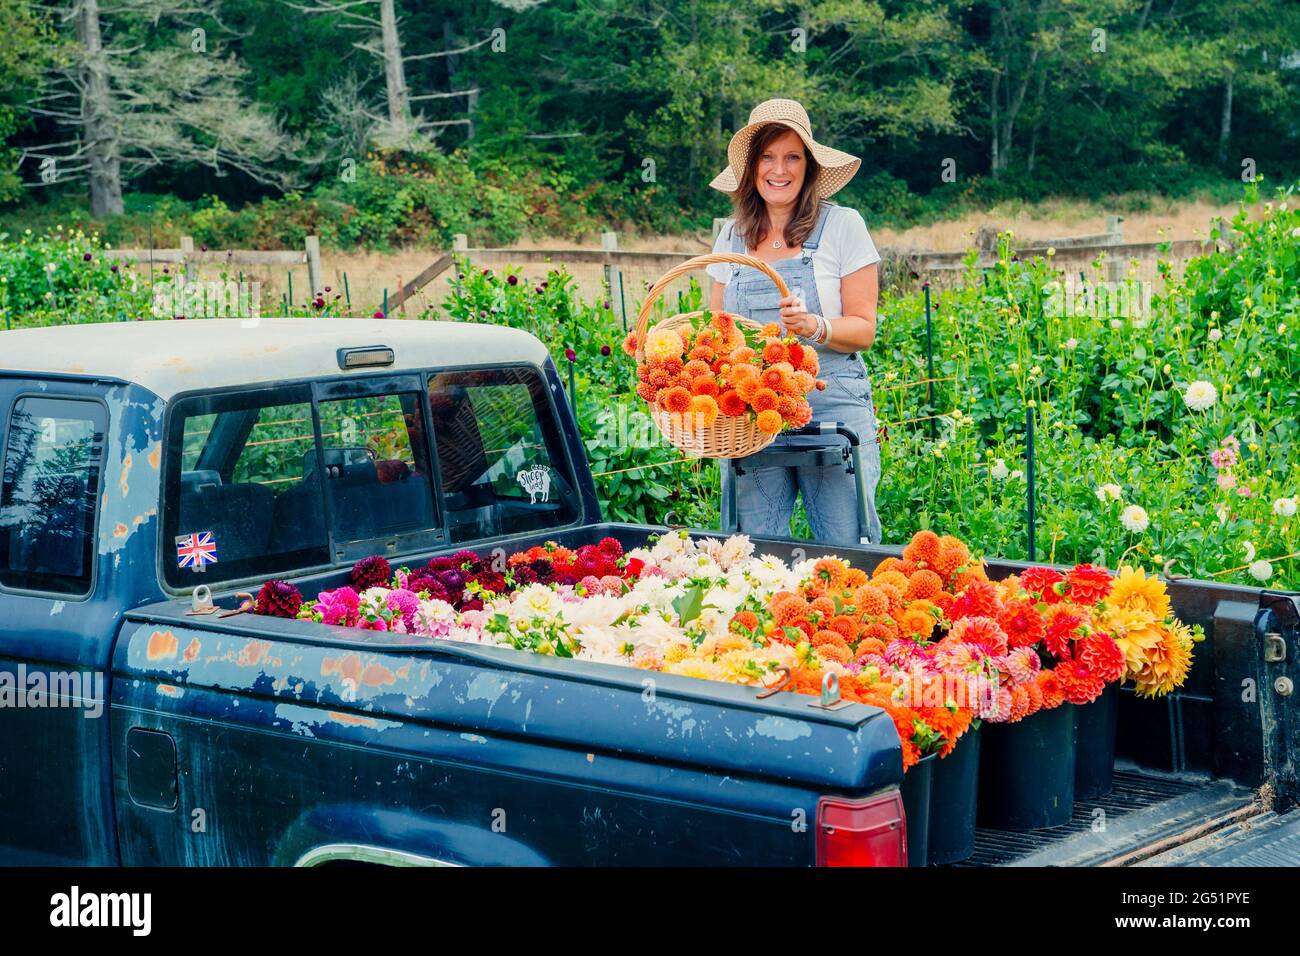 Lit camion plein de fleurs de Dahlia et femme avec panier Banque D'Images